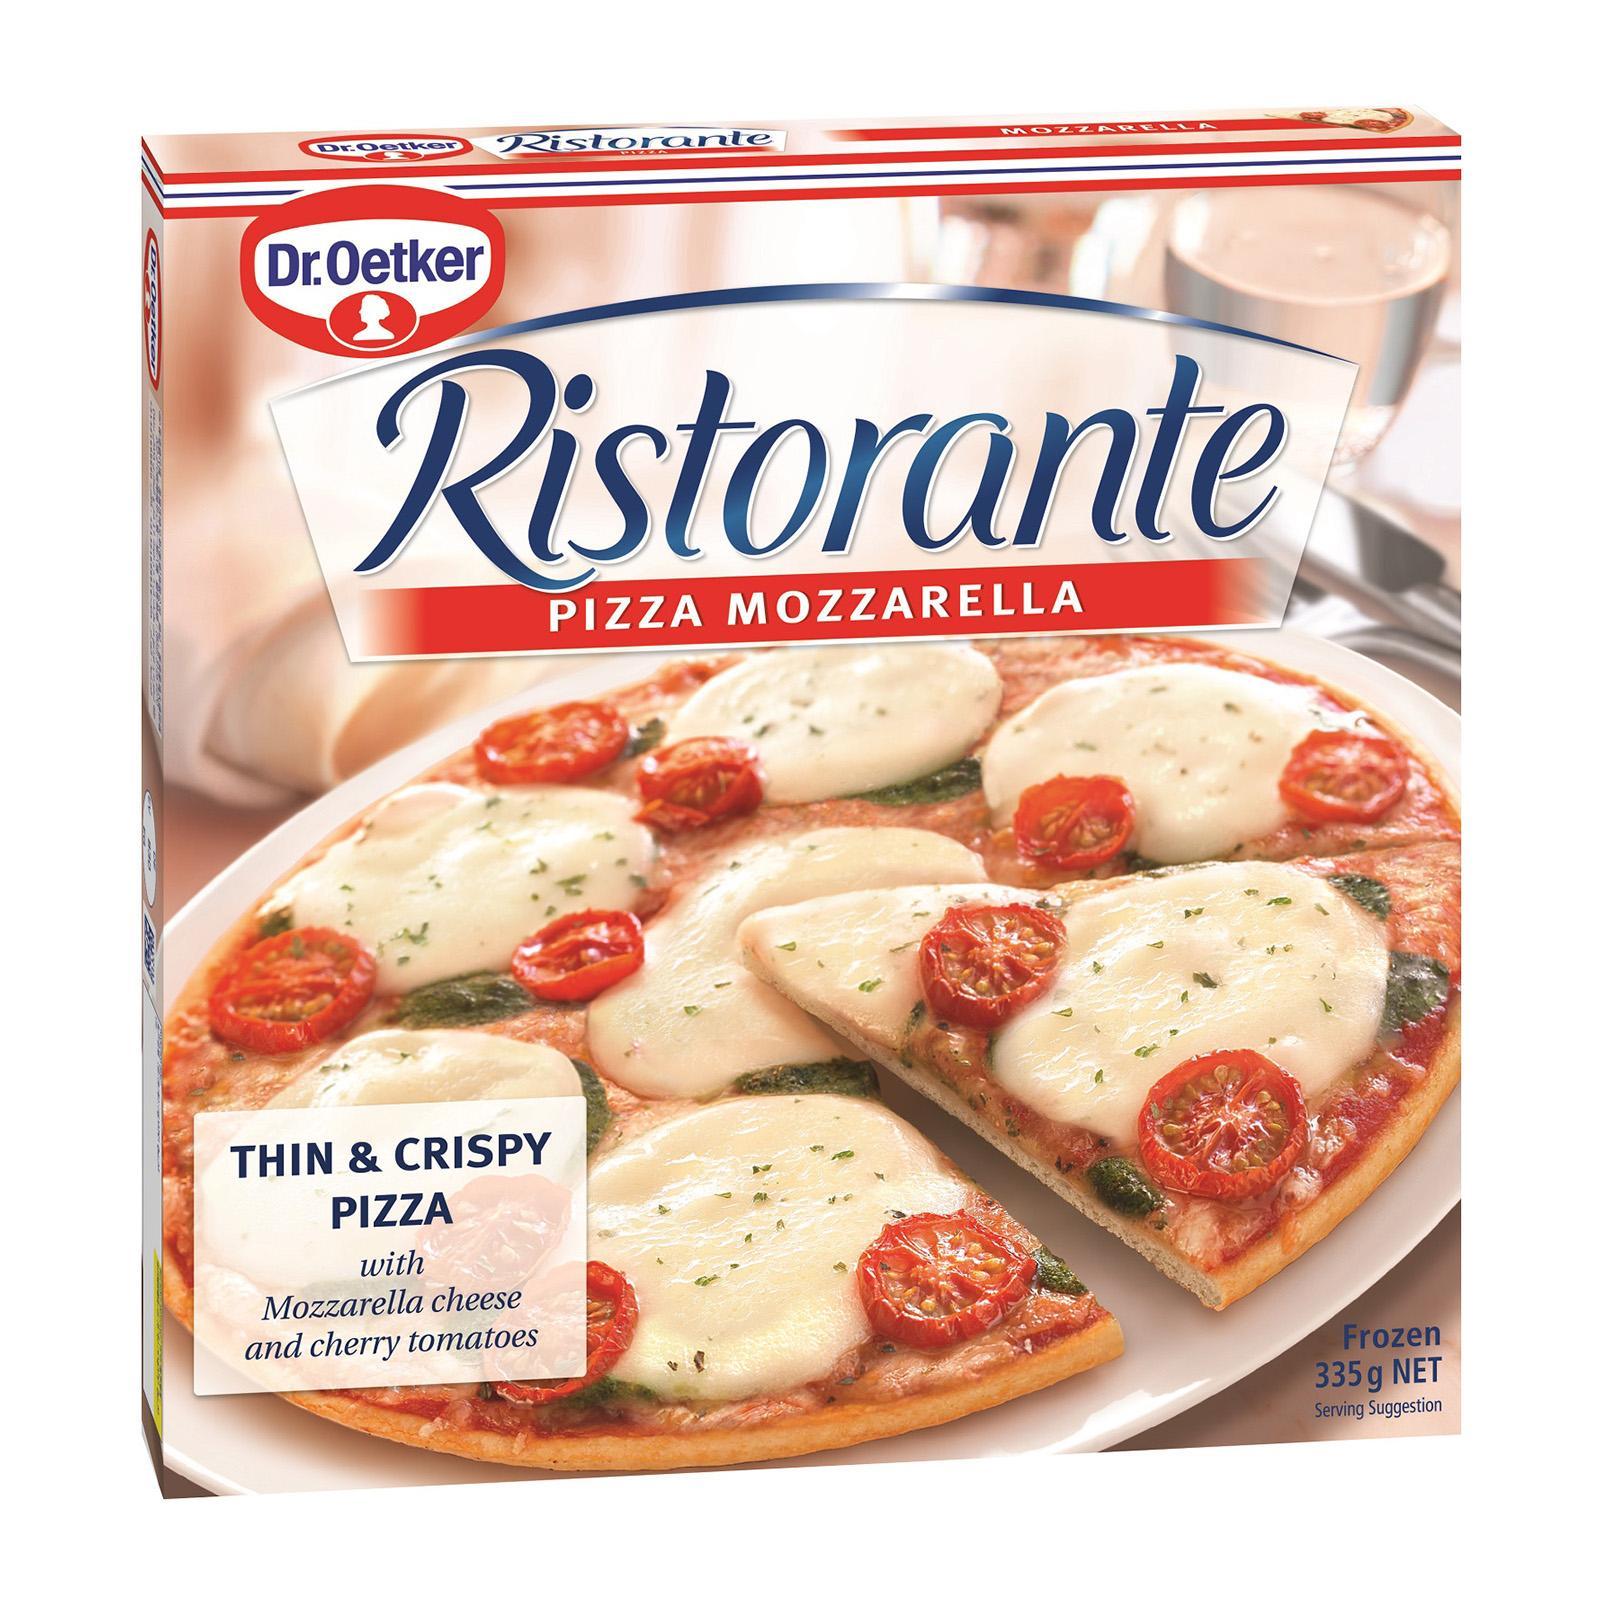 Dr Oetker Ristonrate Mozzarella Pizza